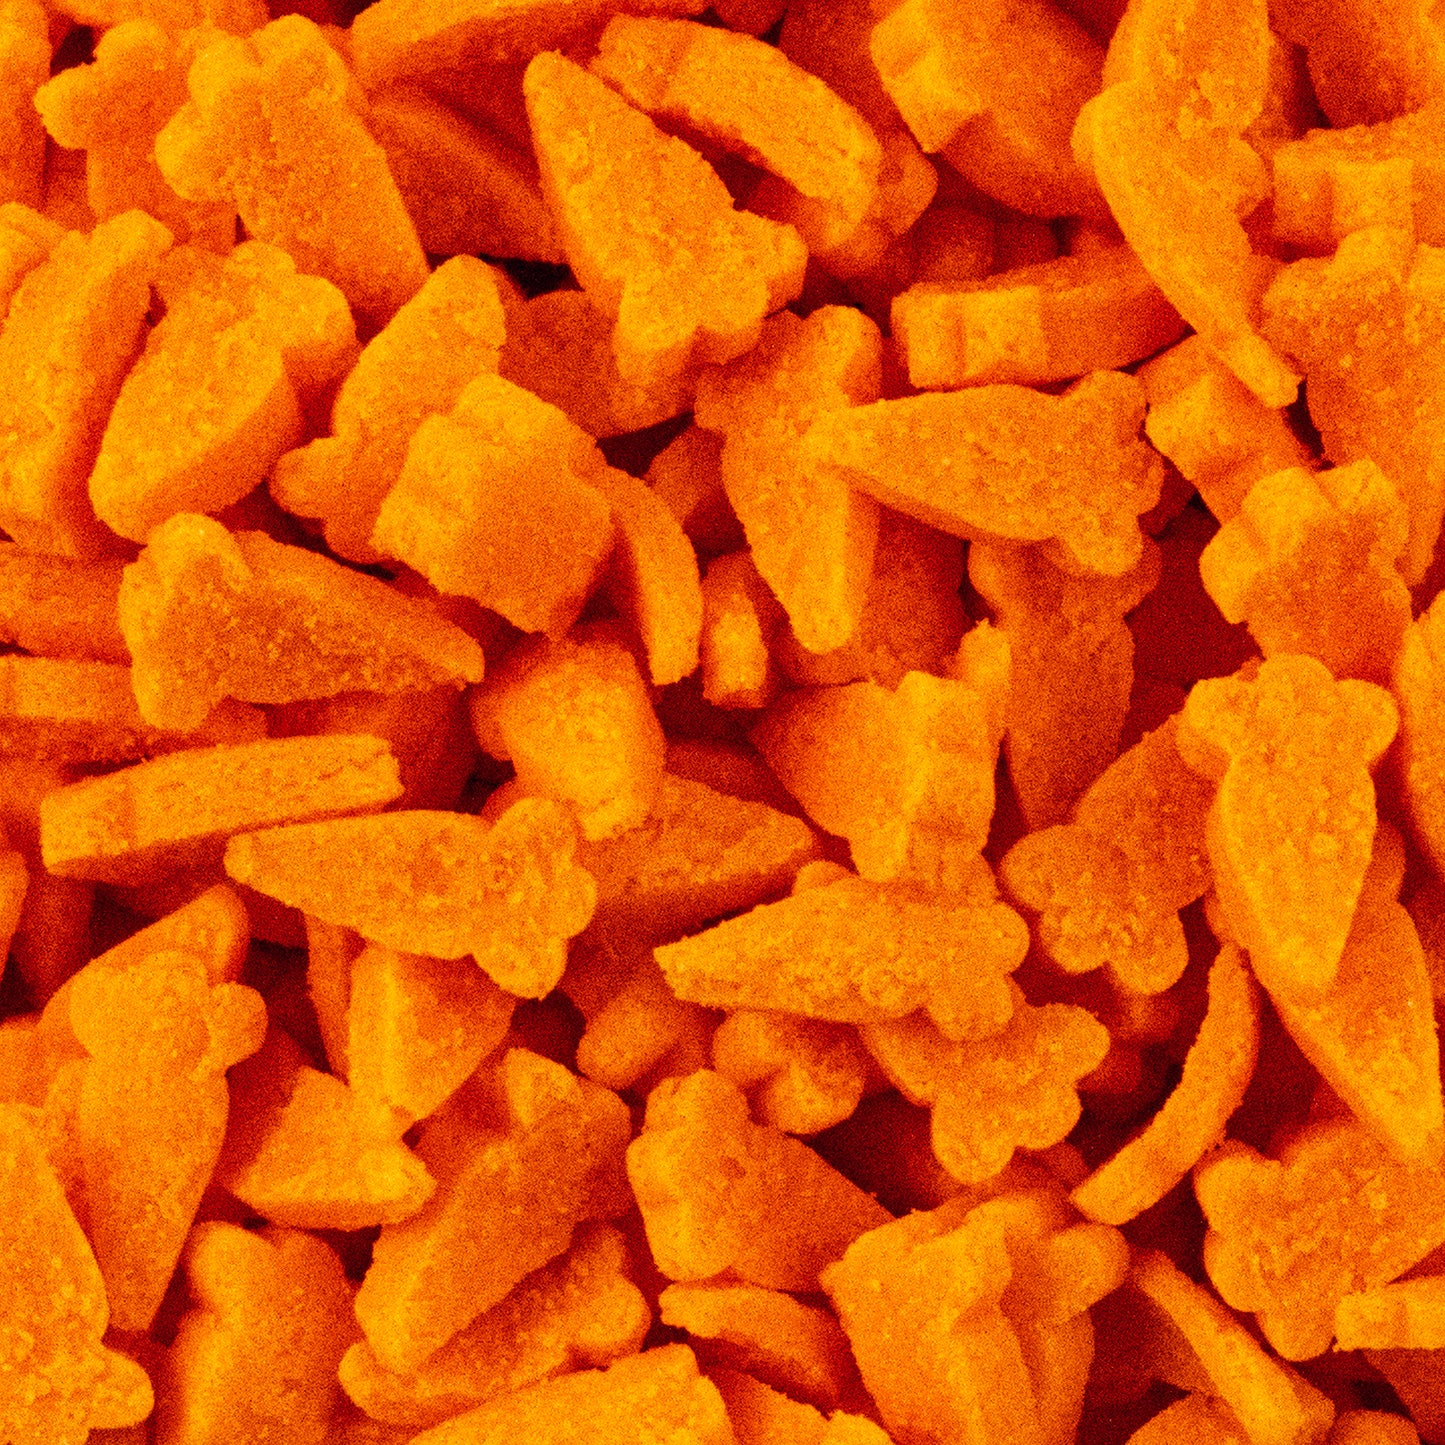 Orange Carrot Sprinkles